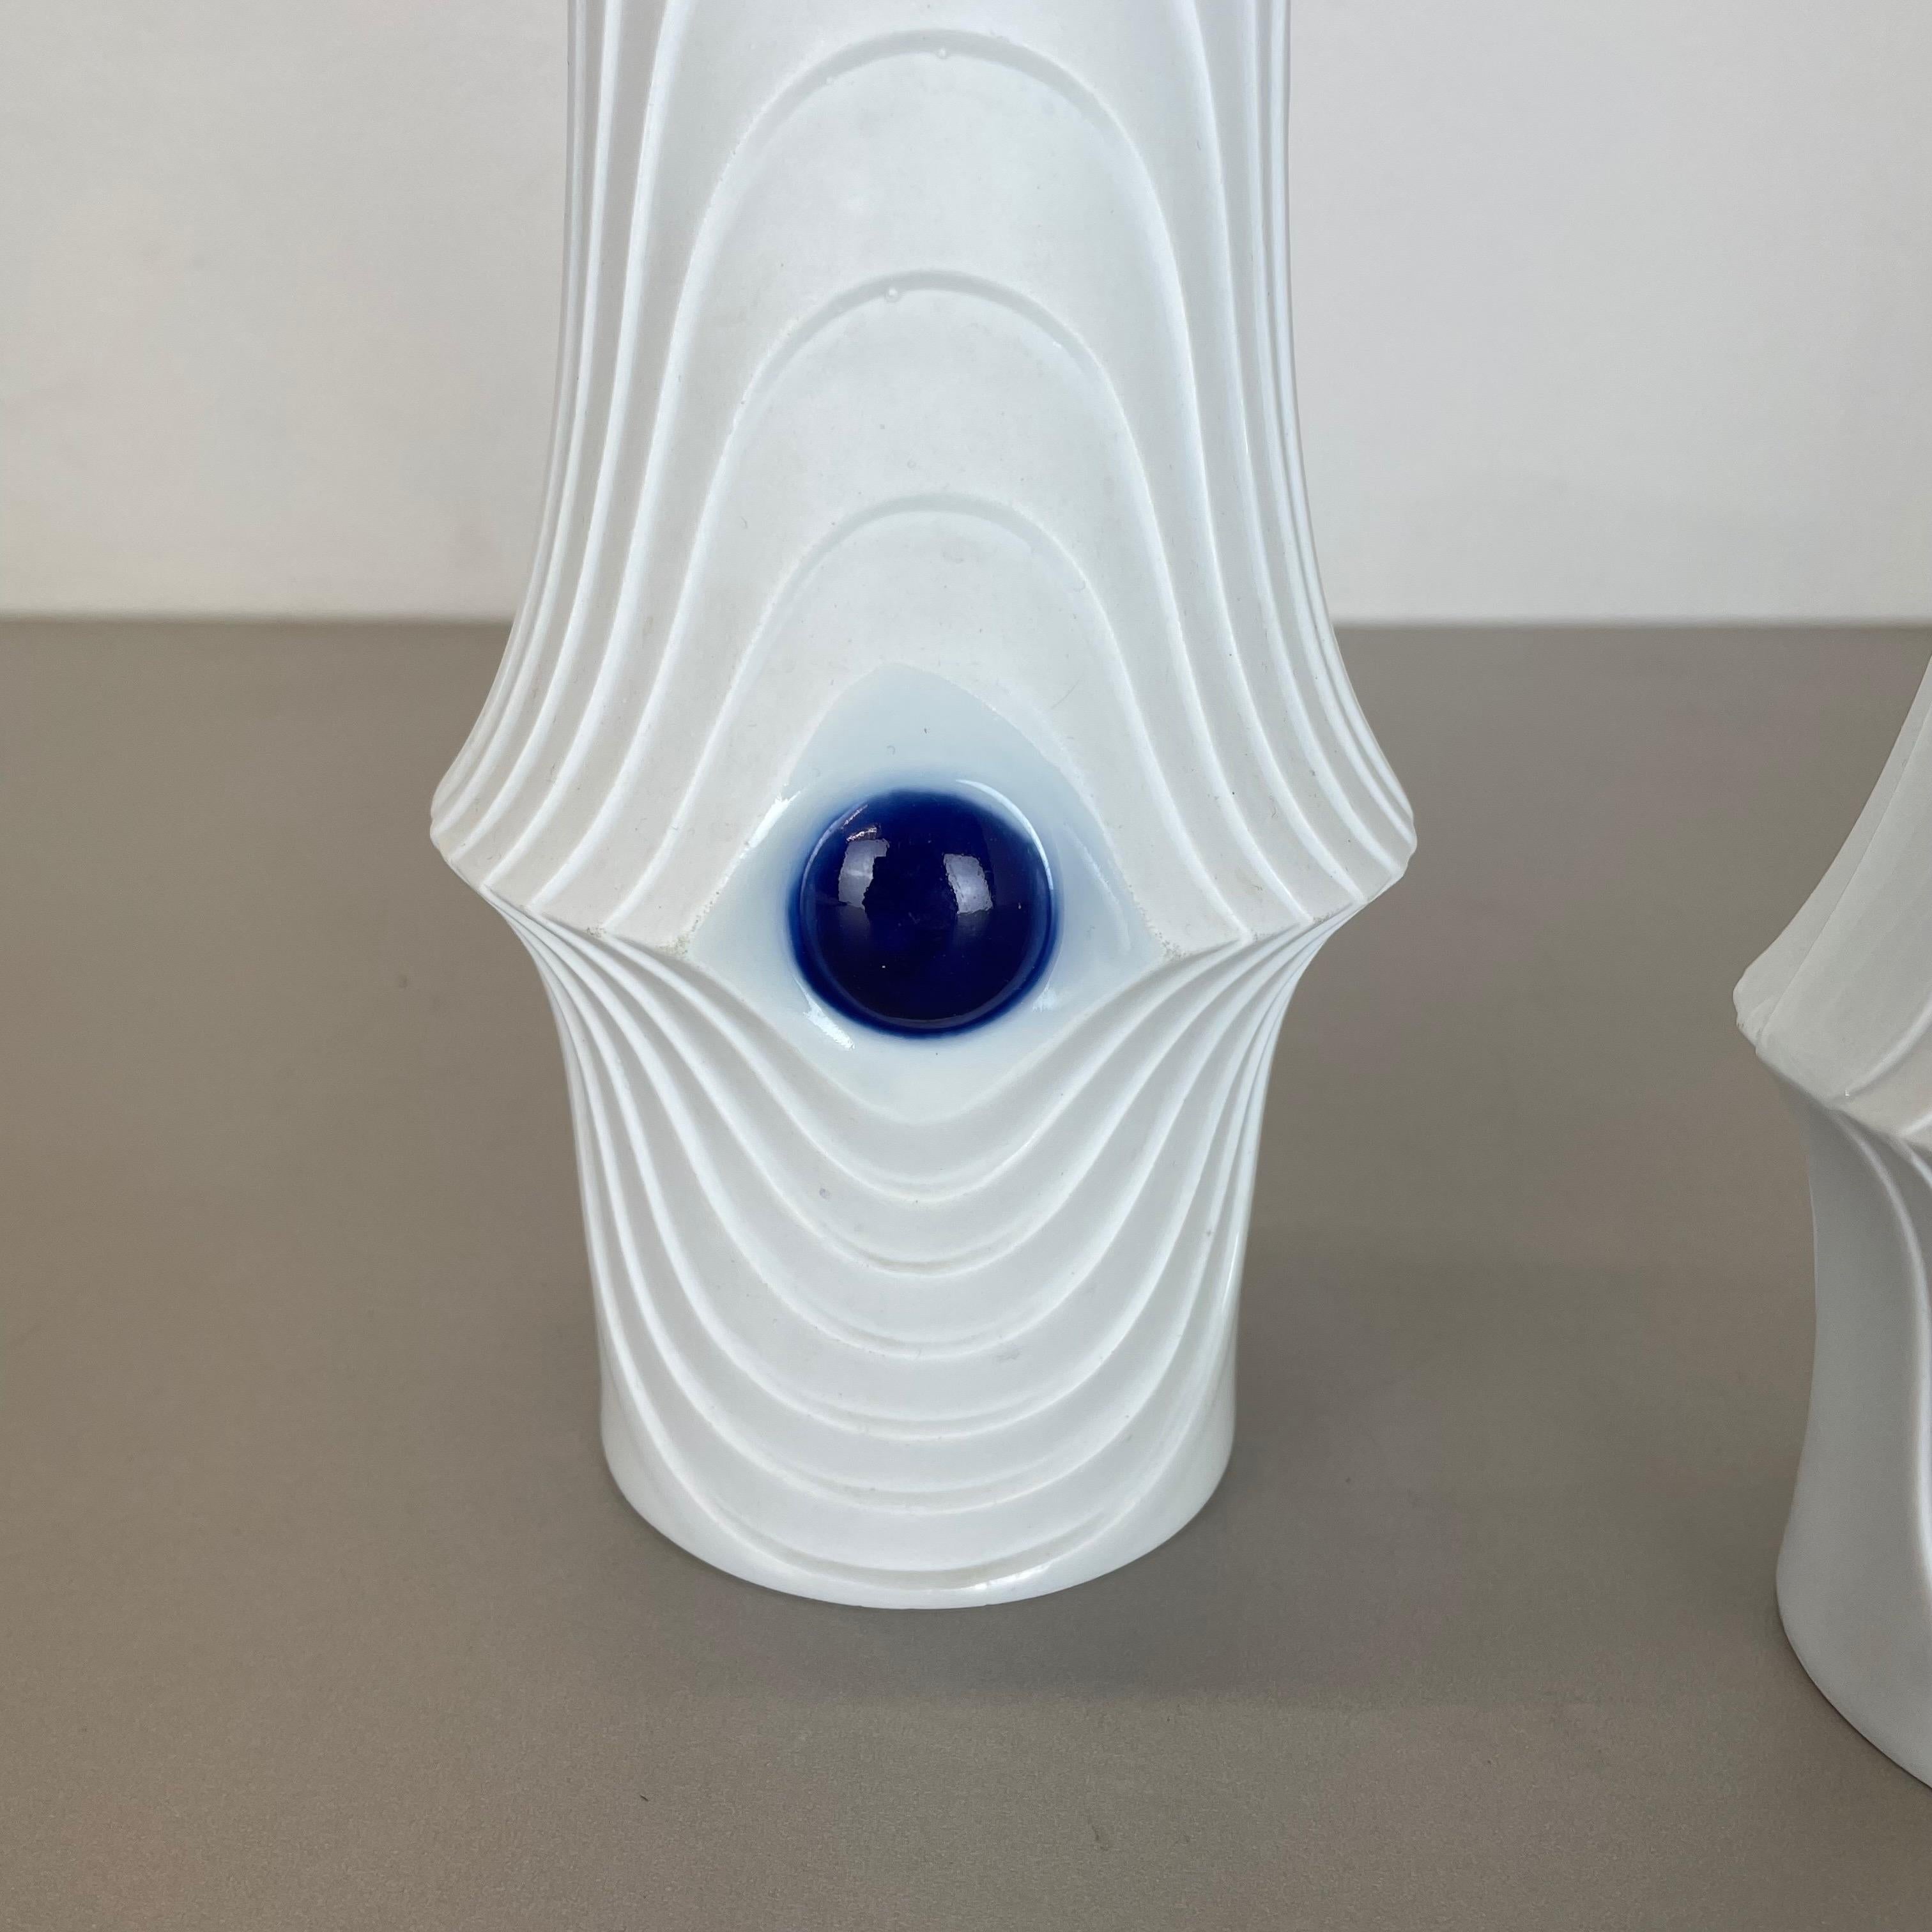 20th Century Set of 2 Original Porcelain Op Art Vase Made by Royal Bavaria KPM Germany, 1970s For Sale